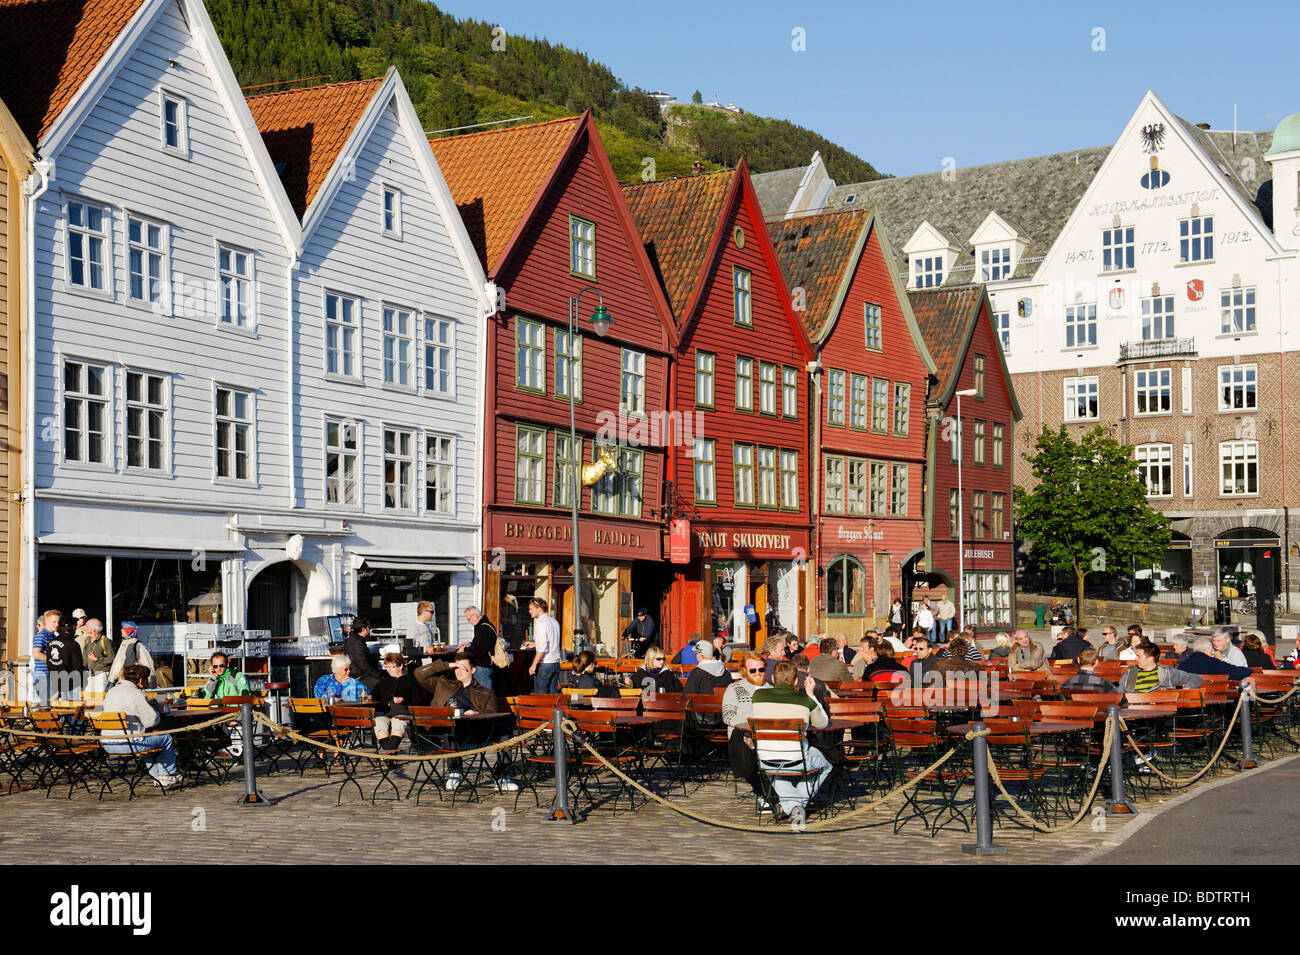 Hanseatic quarter, Bryggen, Bergen, Norway, Europe Stock Photo